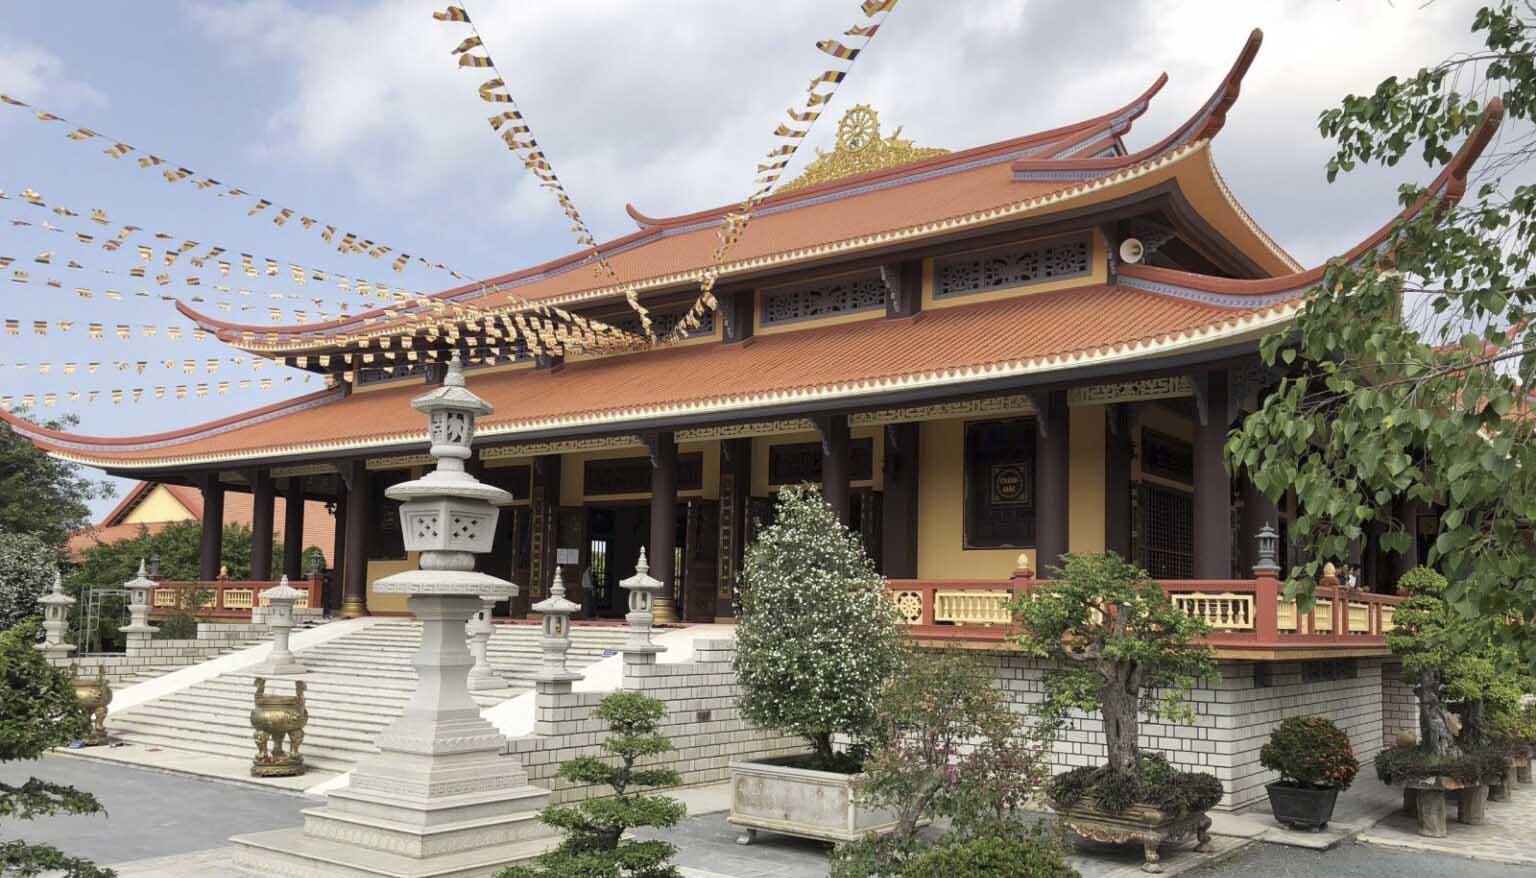 chùa đà lạt nổi tiếng - thiện viện trúc lâm